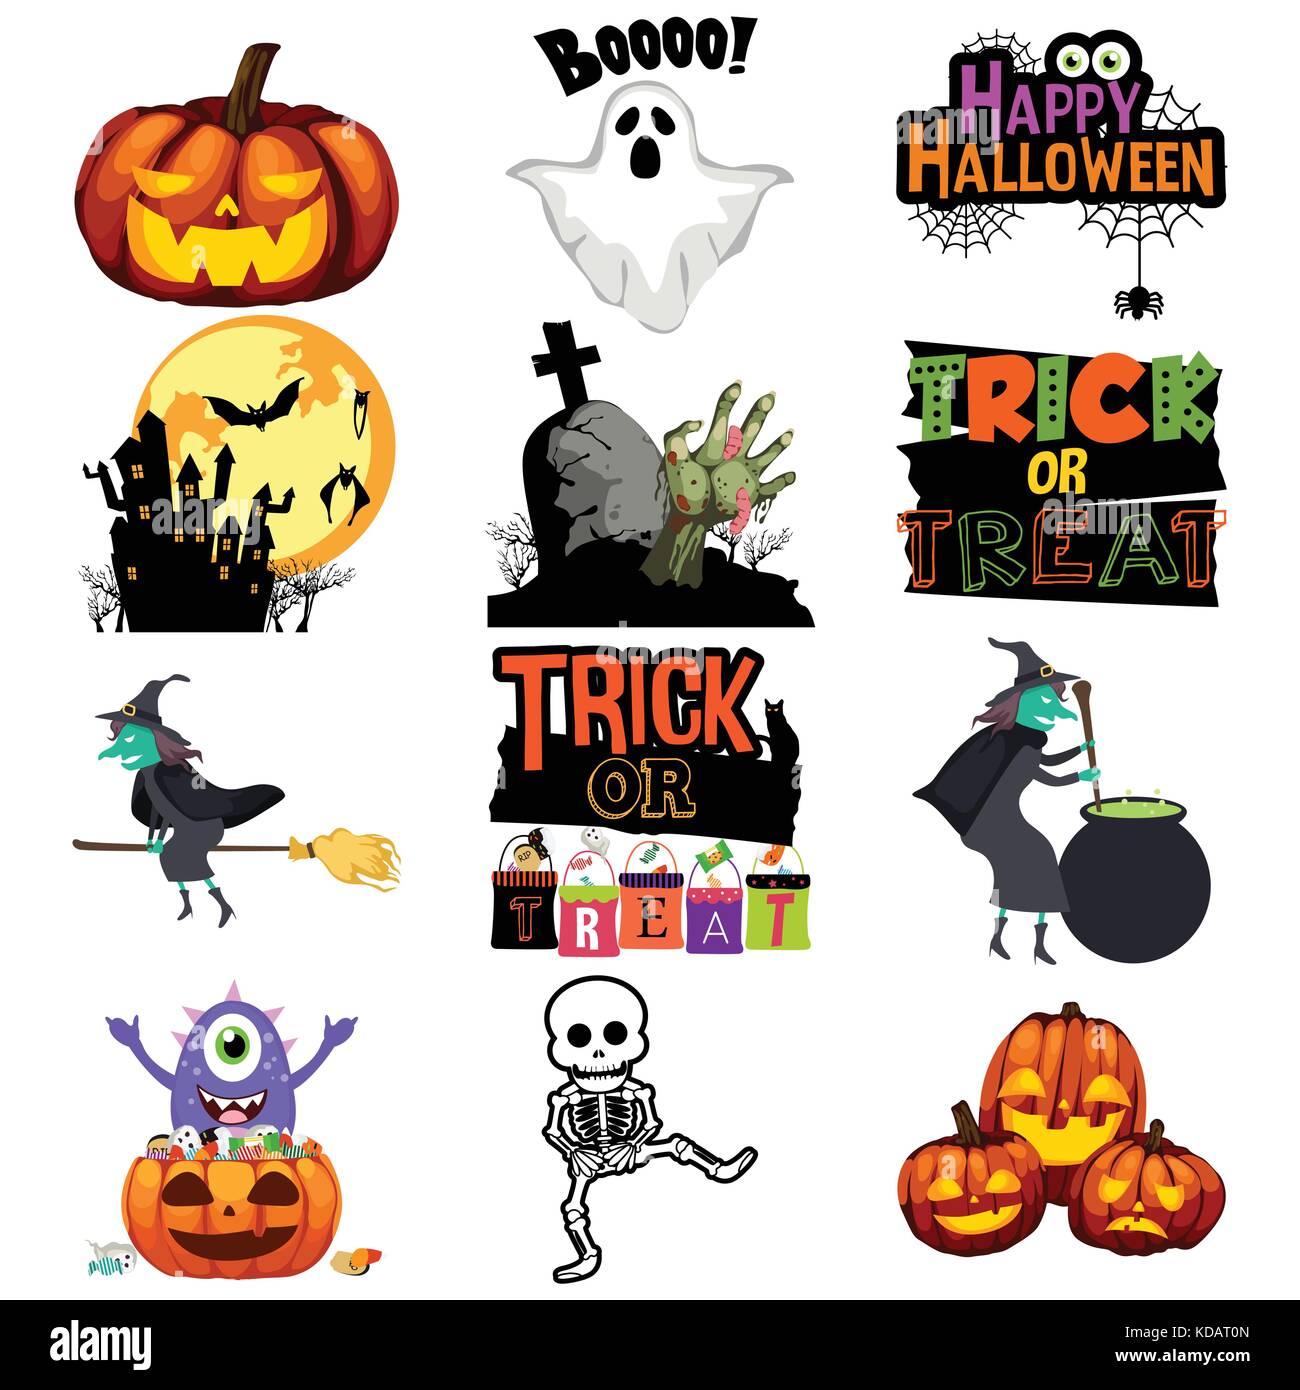 Una illustrazione vettoriale di halloween dolcetto o scherzetto illustrazione delle icone Illustrazione Vettoriale